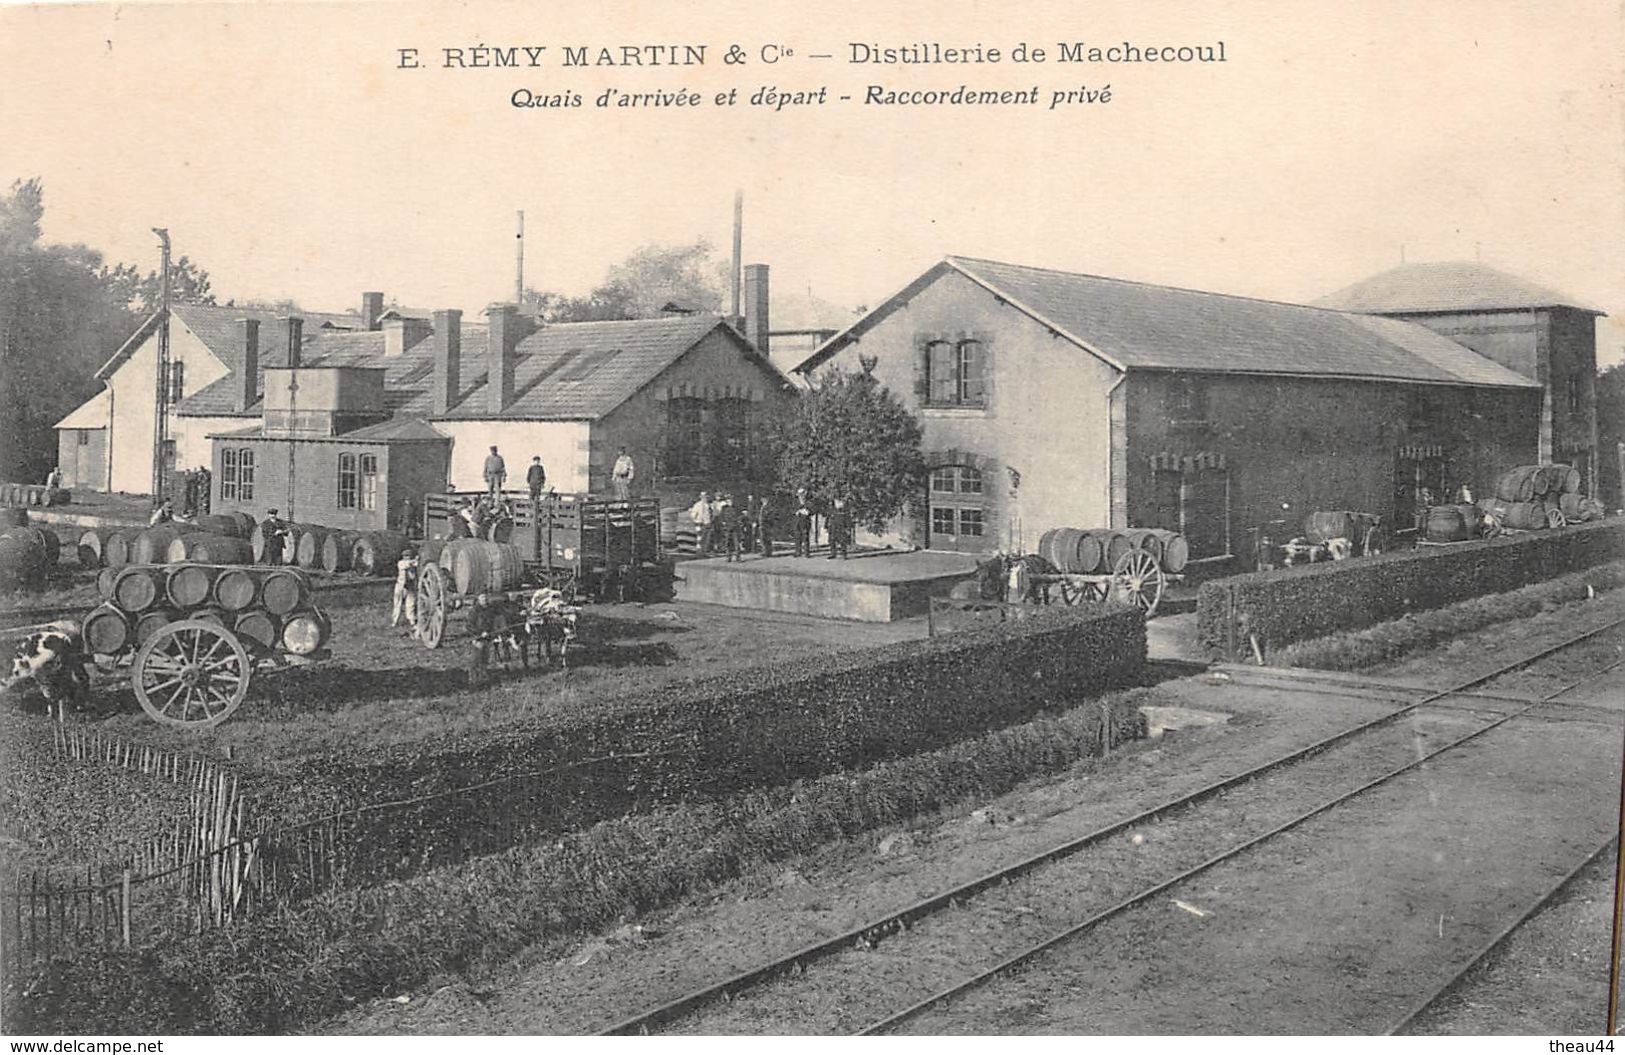 MACHECOUL - Distillerie De Machecoul "E. REMY-MARTIN & Cie" - Quais D'Arrivée Et Départ - Raccordement Privé - Gare - Machecoul